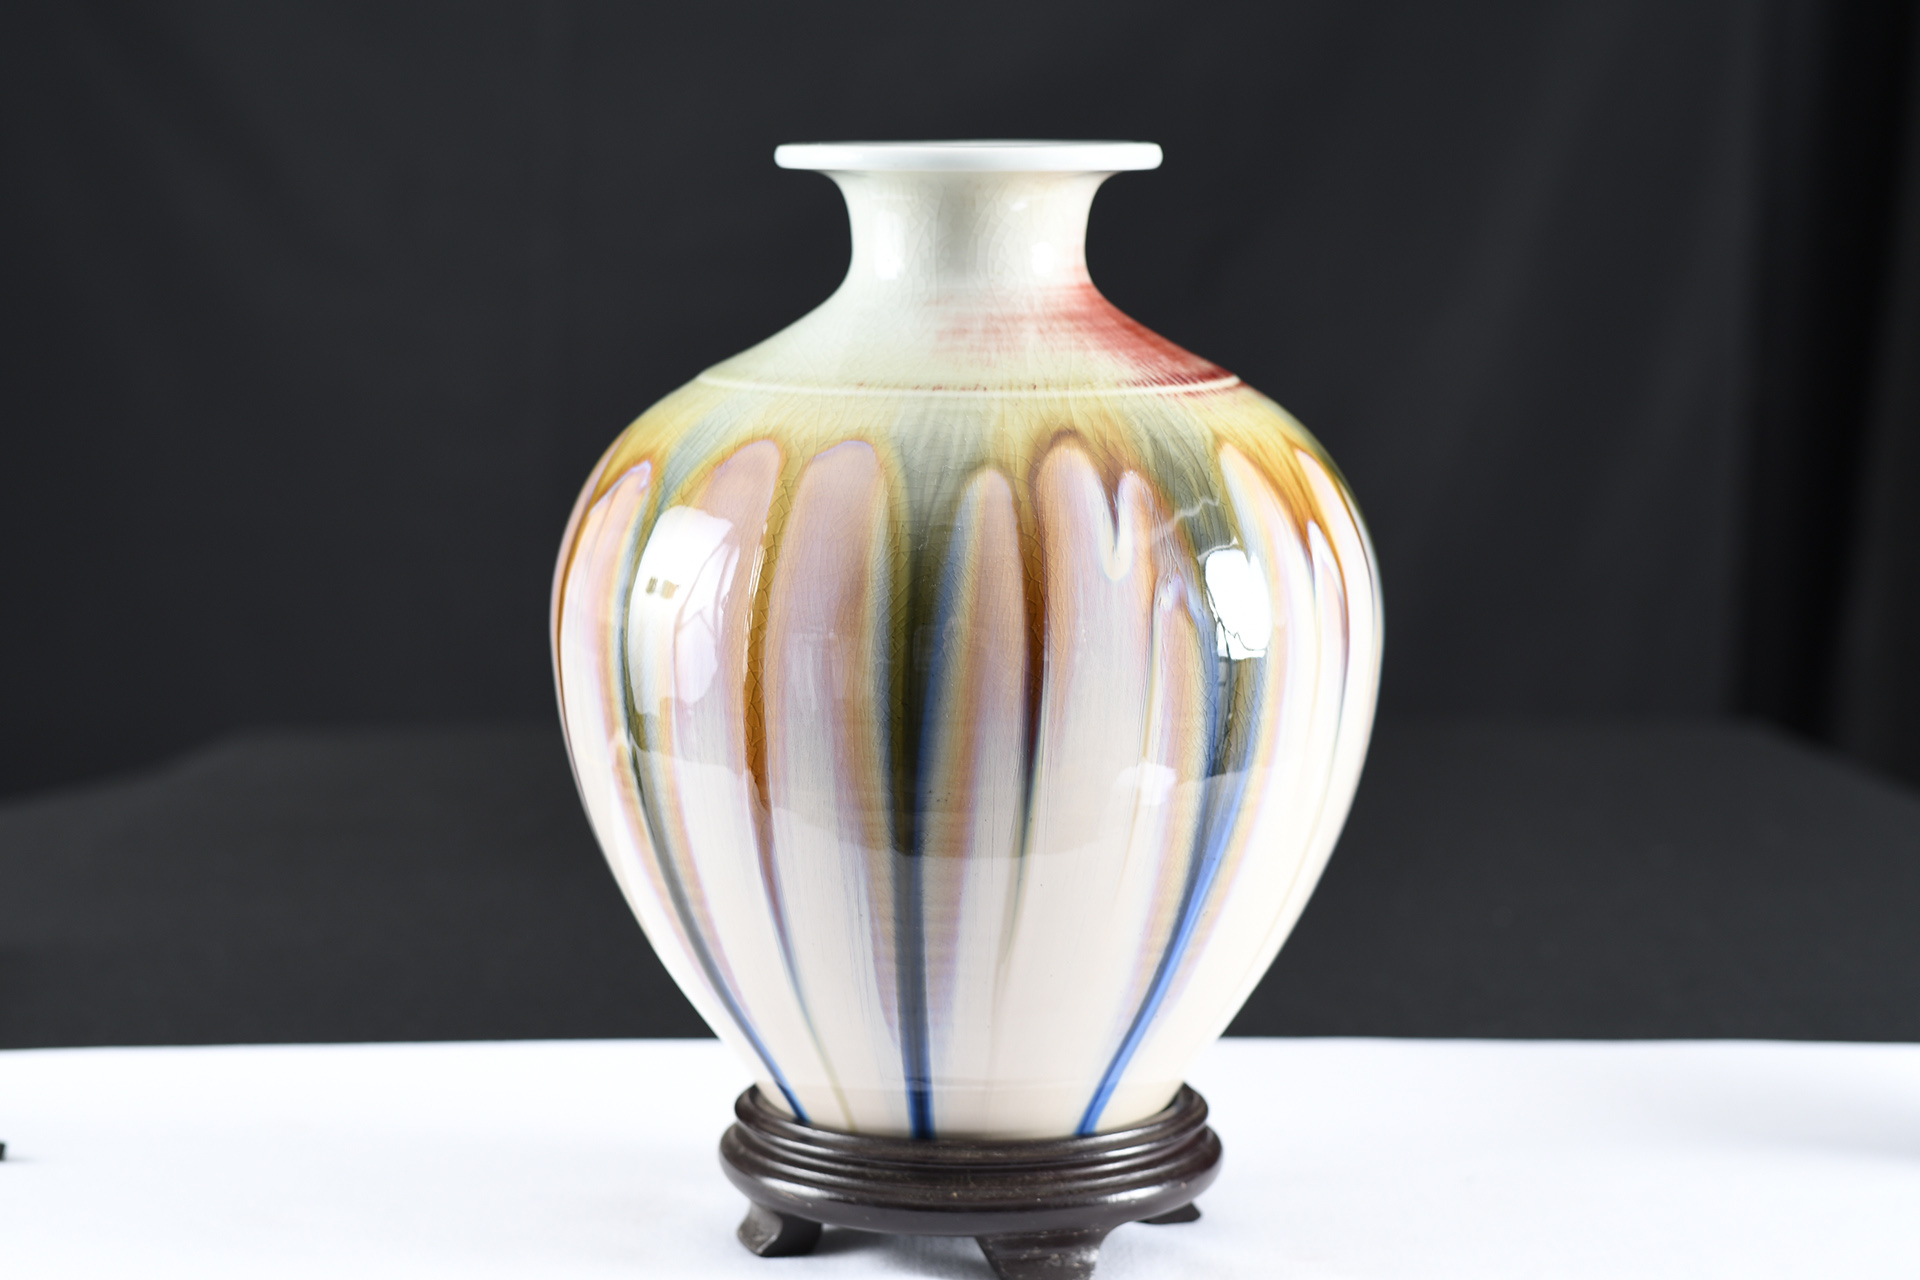 Chinese Porcelain Handmade Art Vase